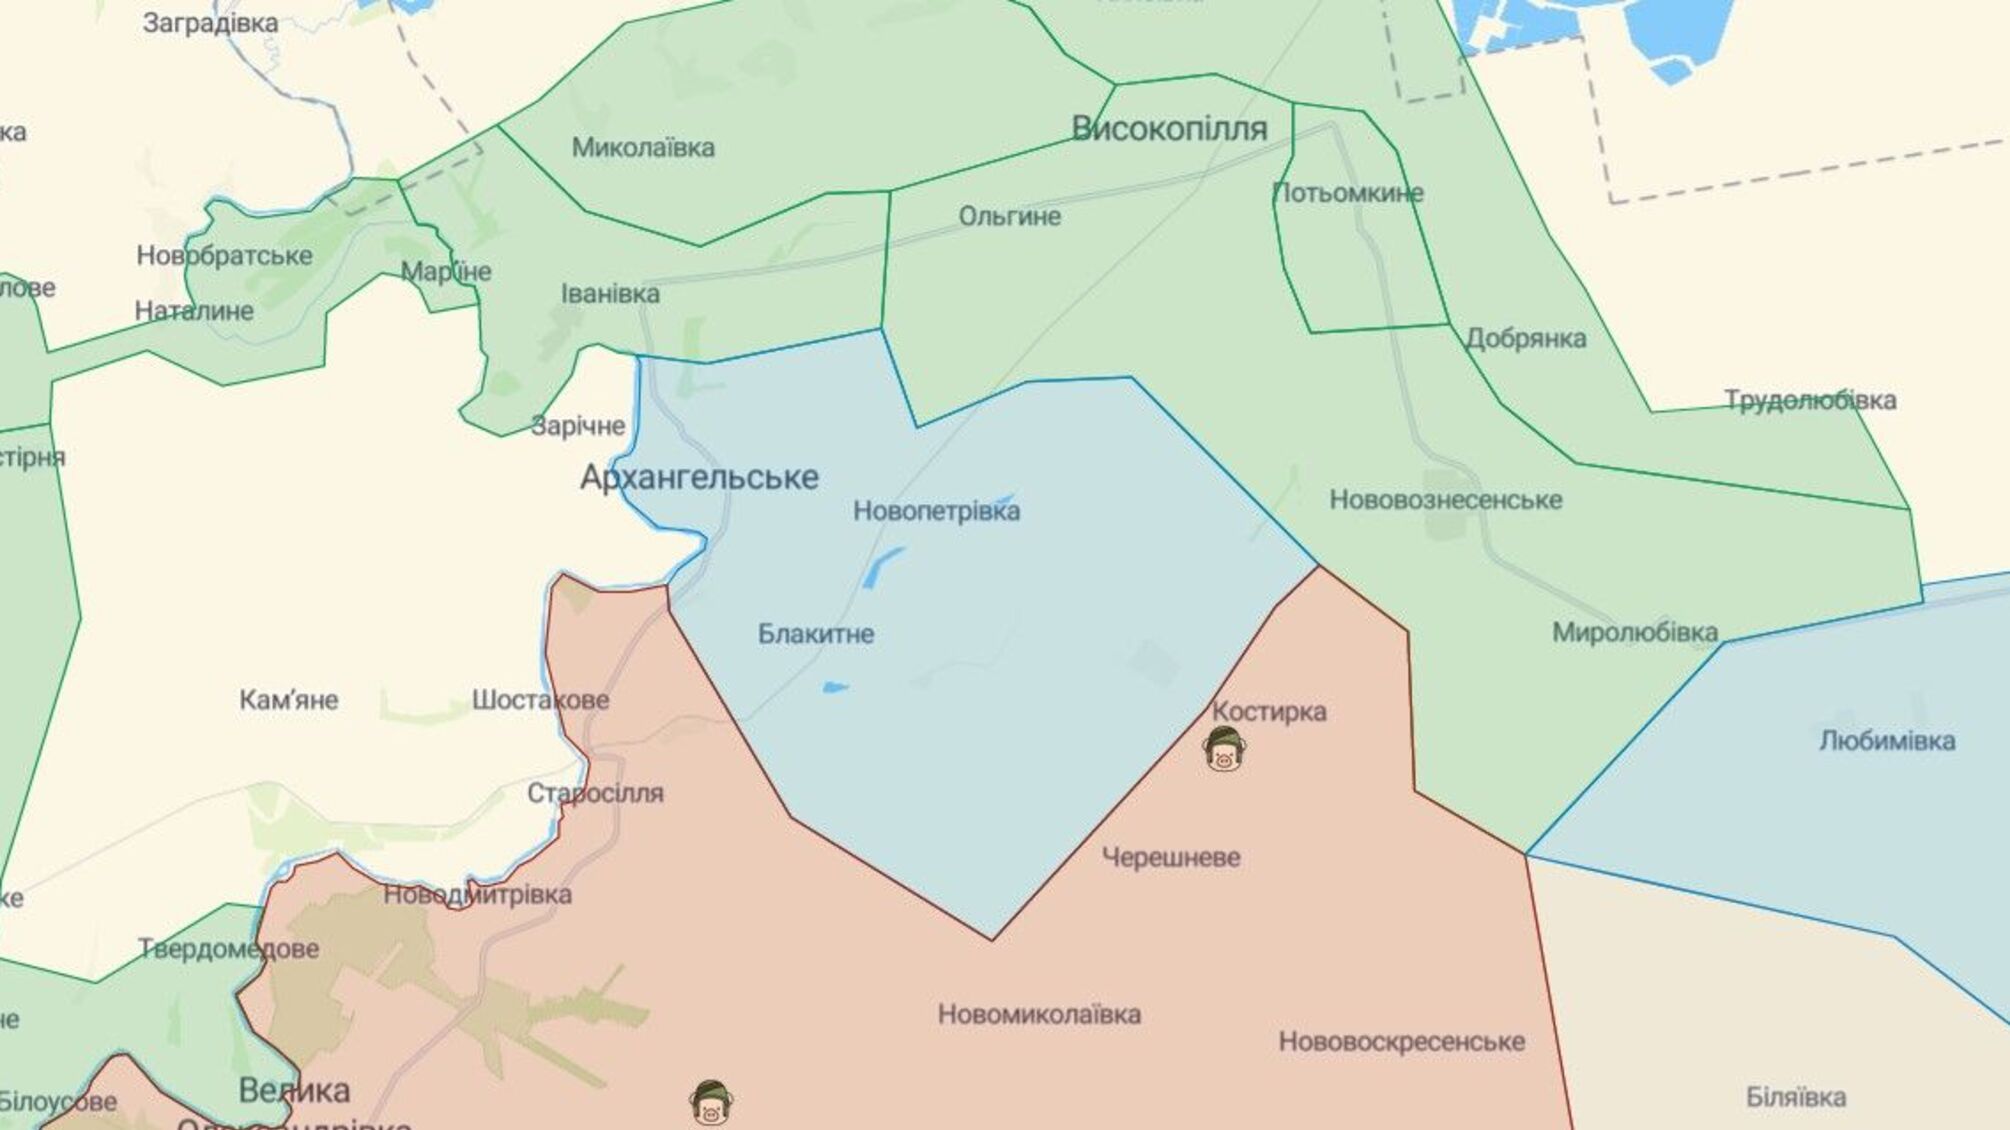 ВСУ освободили еще один населенный пункт в Херсонской области